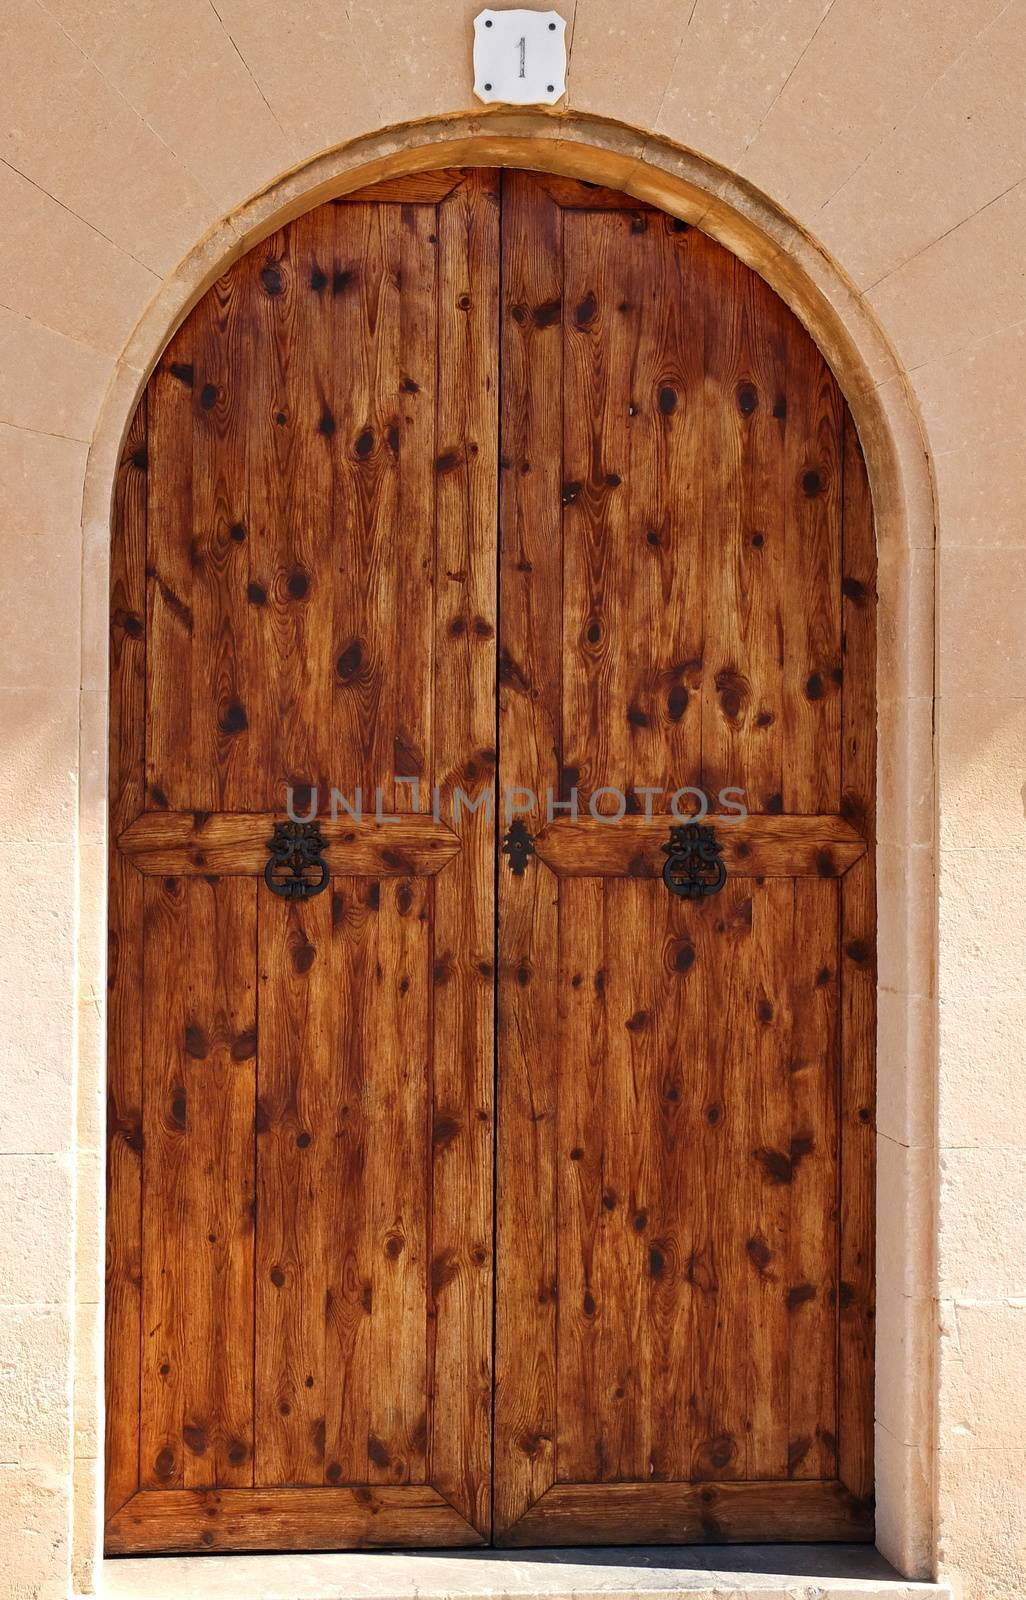 Oval wooden doors by antenacarnidlo